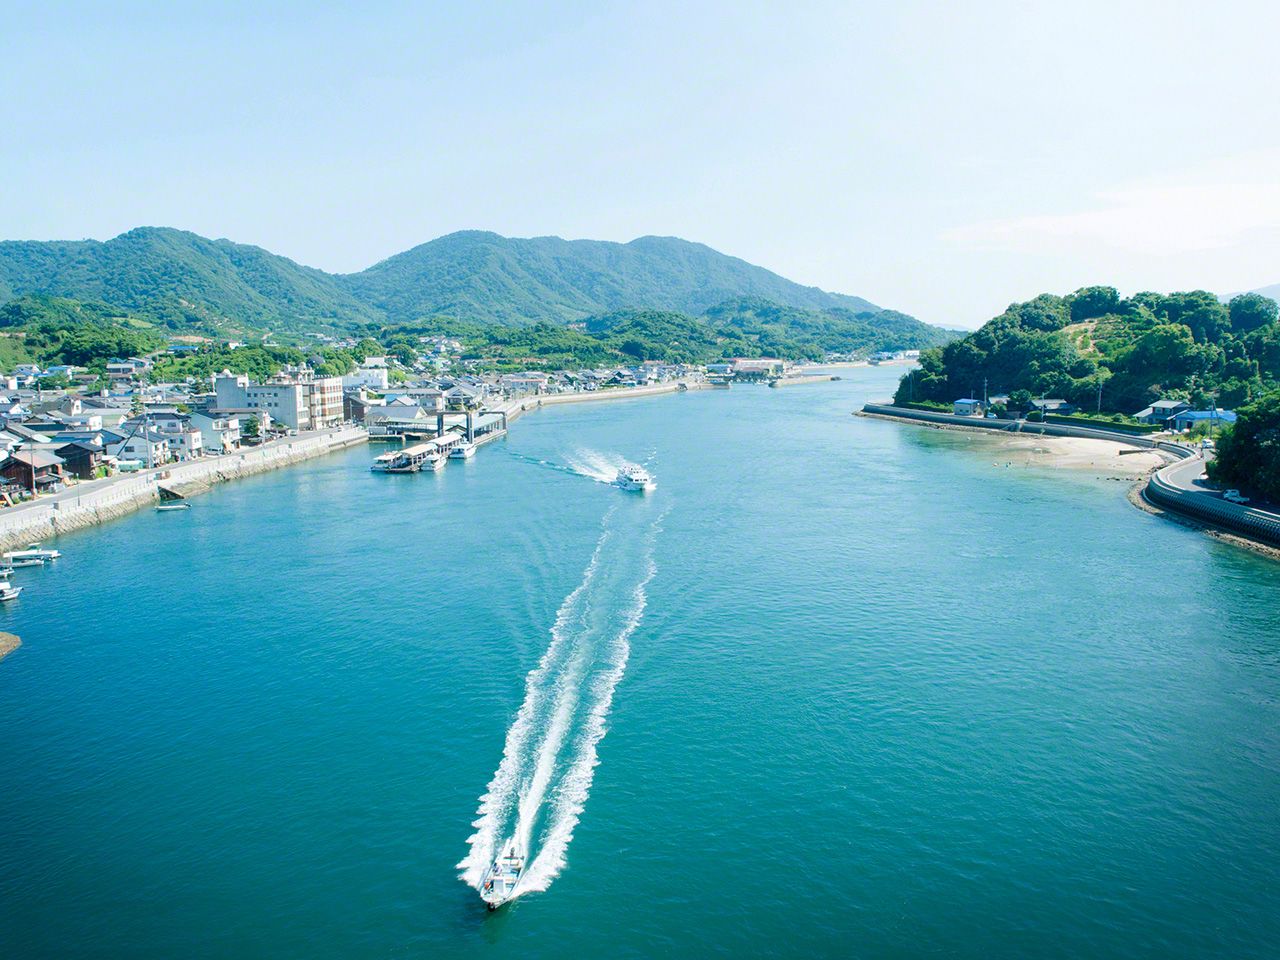 渔船在濑户田航道上划出美丽的轨迹（生口岛）